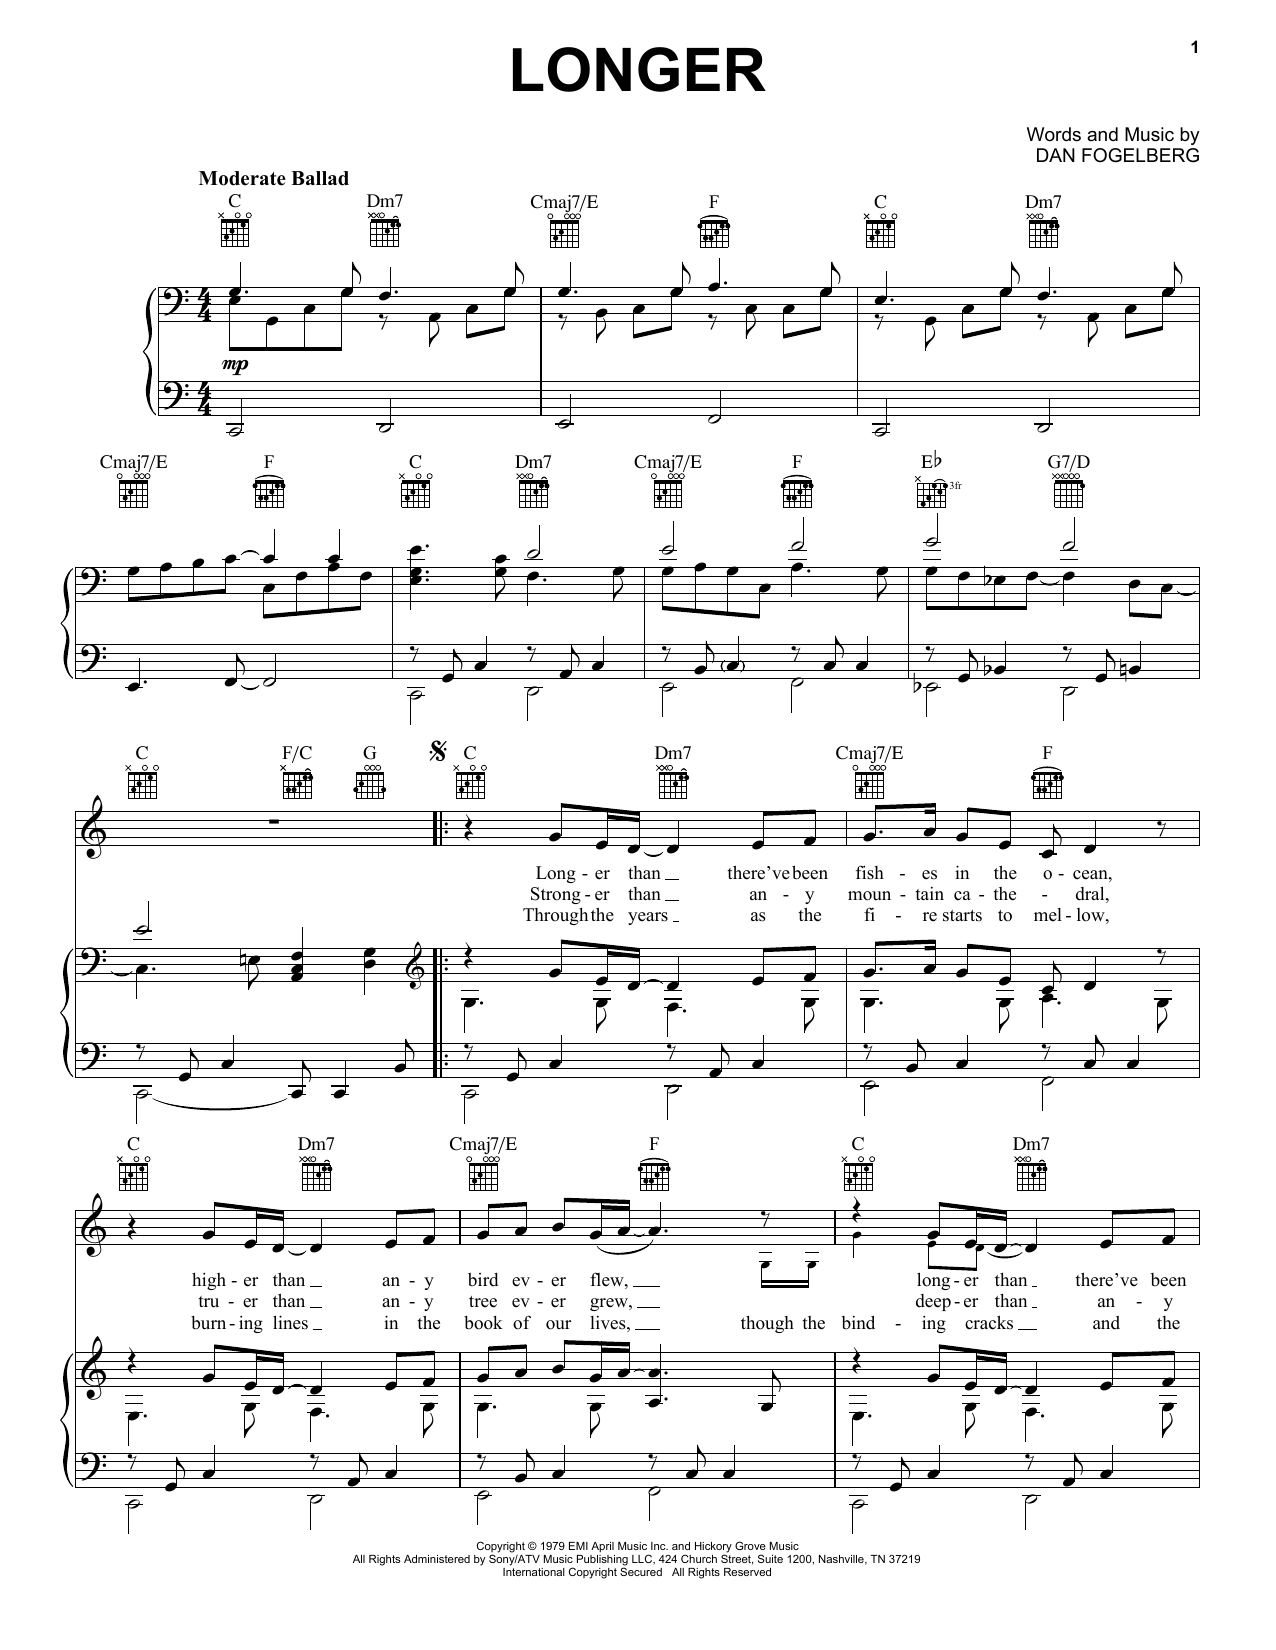 Dan Fogelberg Longer Sheet Music Notes & Chords for Violin Duet - Download or Print PDF